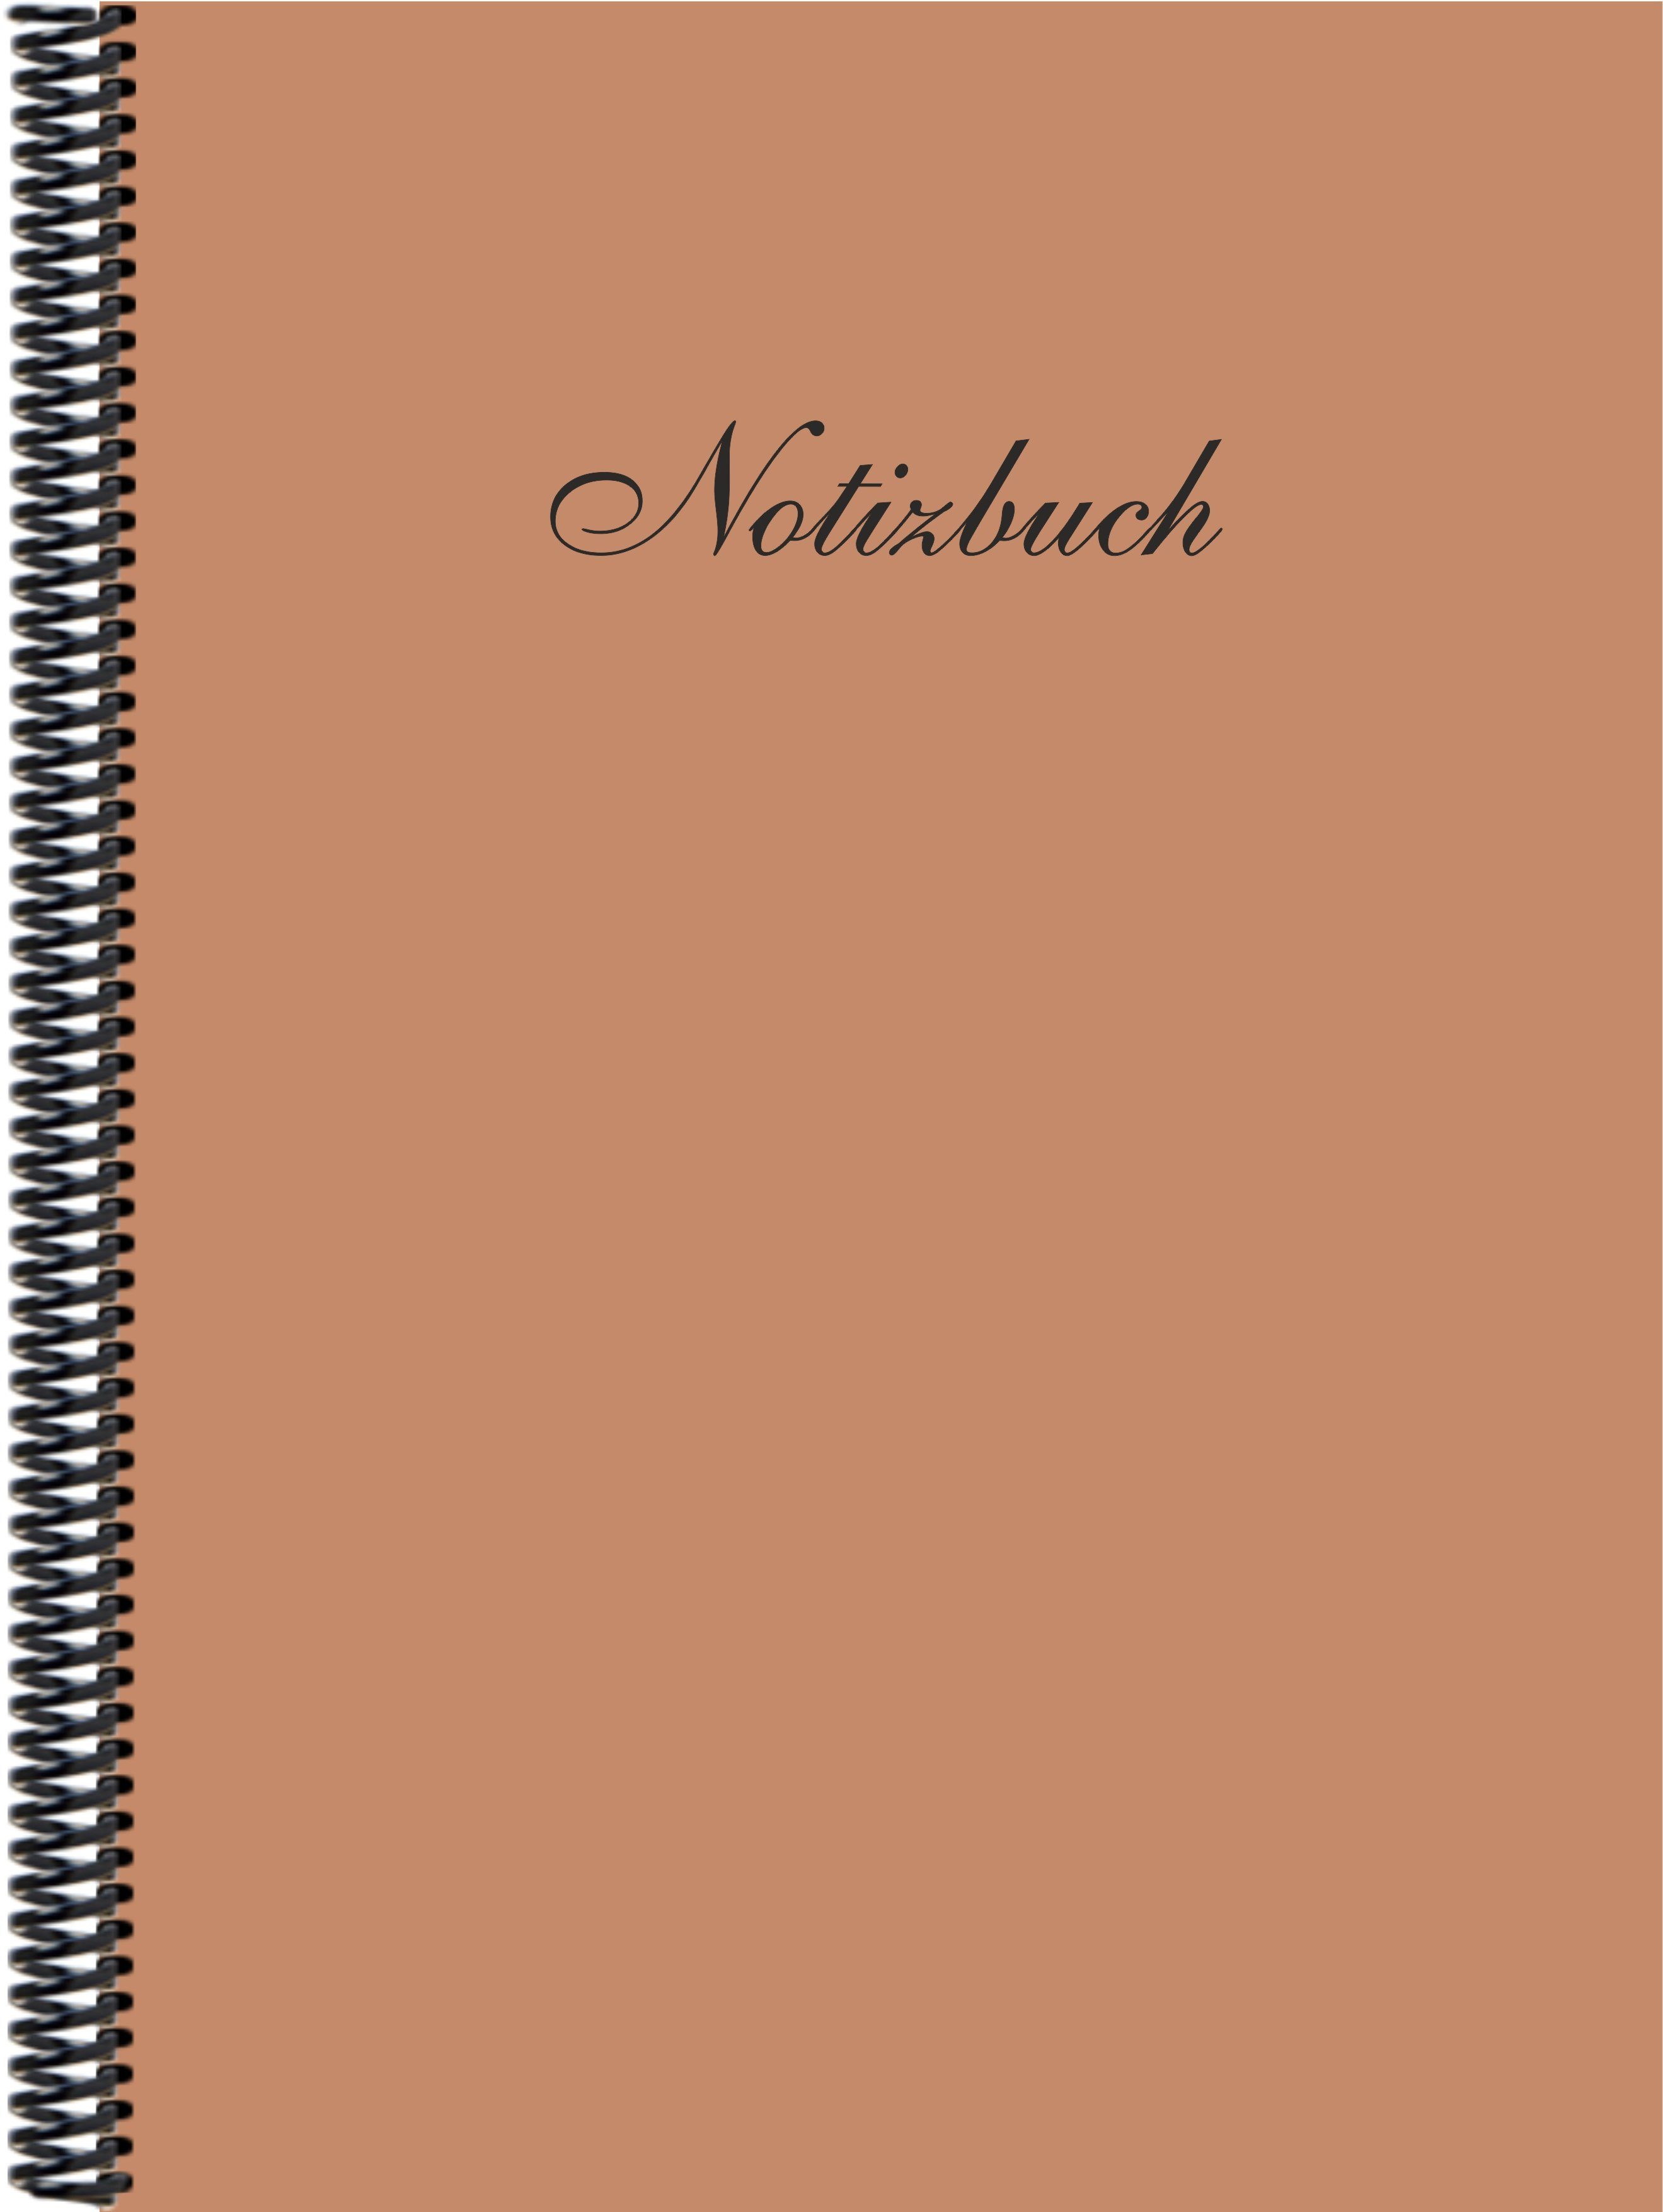 Notizbuch Notizbuch DINA4 der Gmbh in Trendfarbe kariert, E&Z hellbraun Verlag